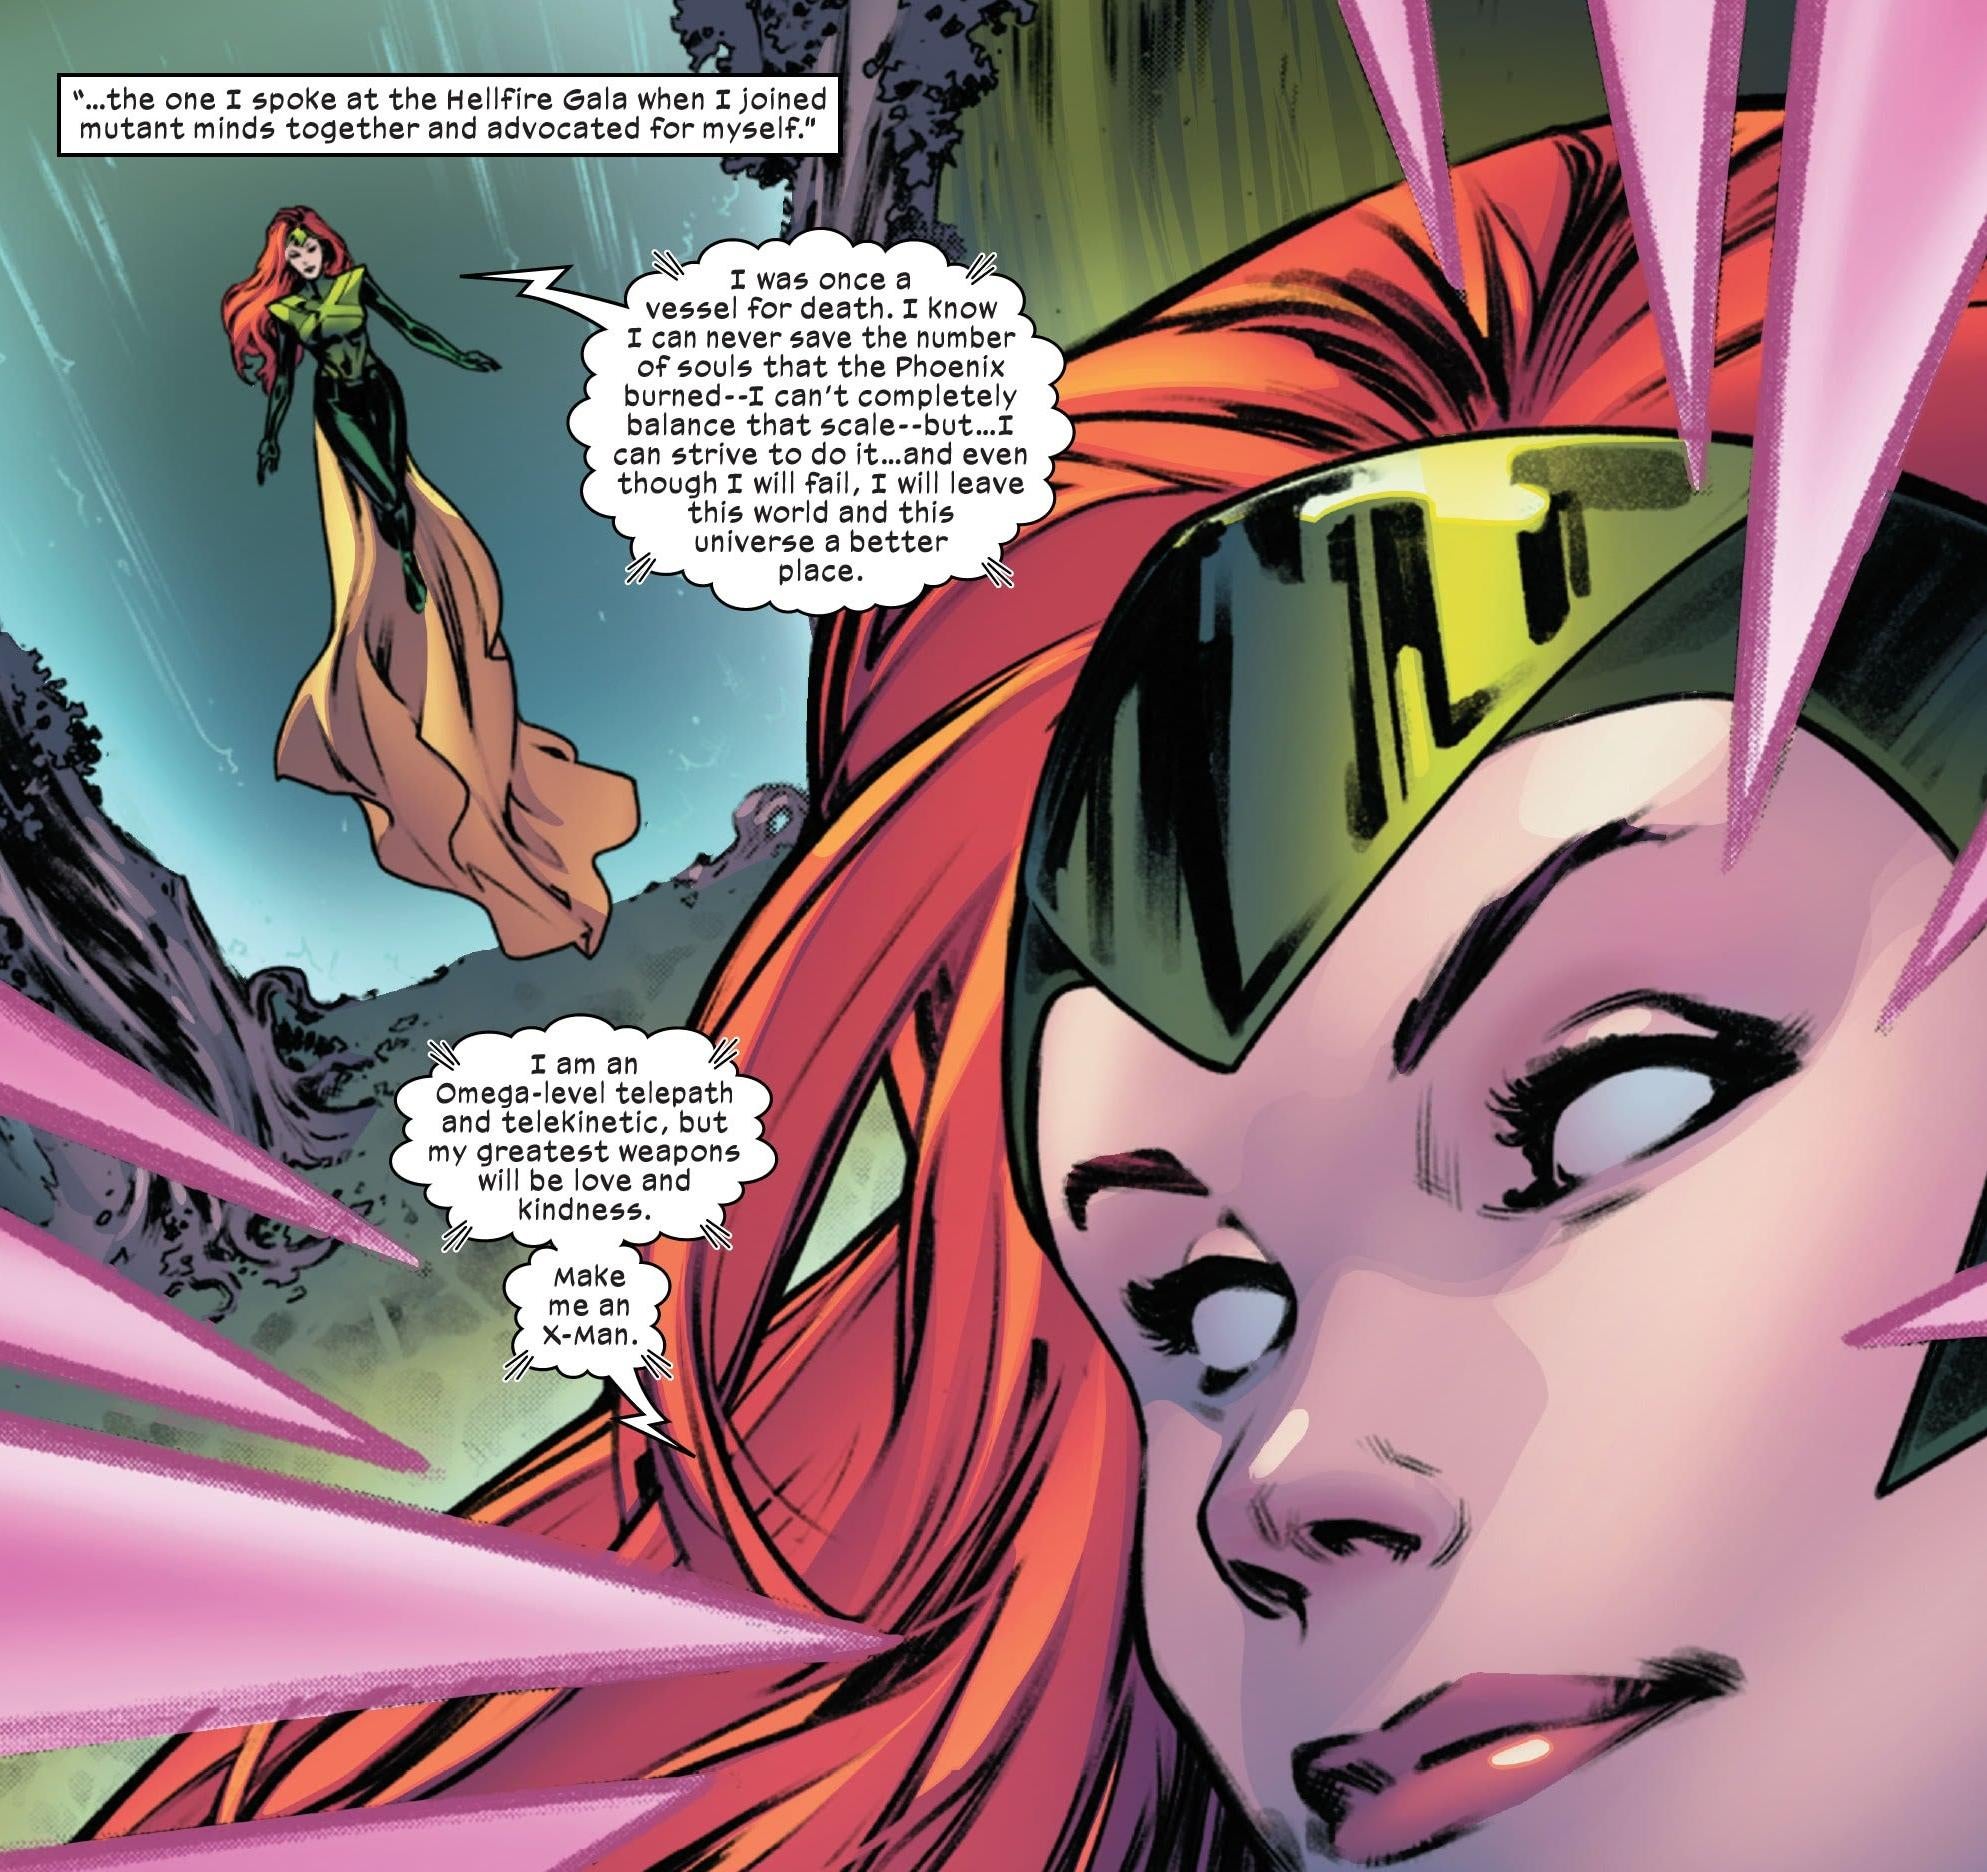 Jean Grey’s Telling on Herself Again in X-Men #4